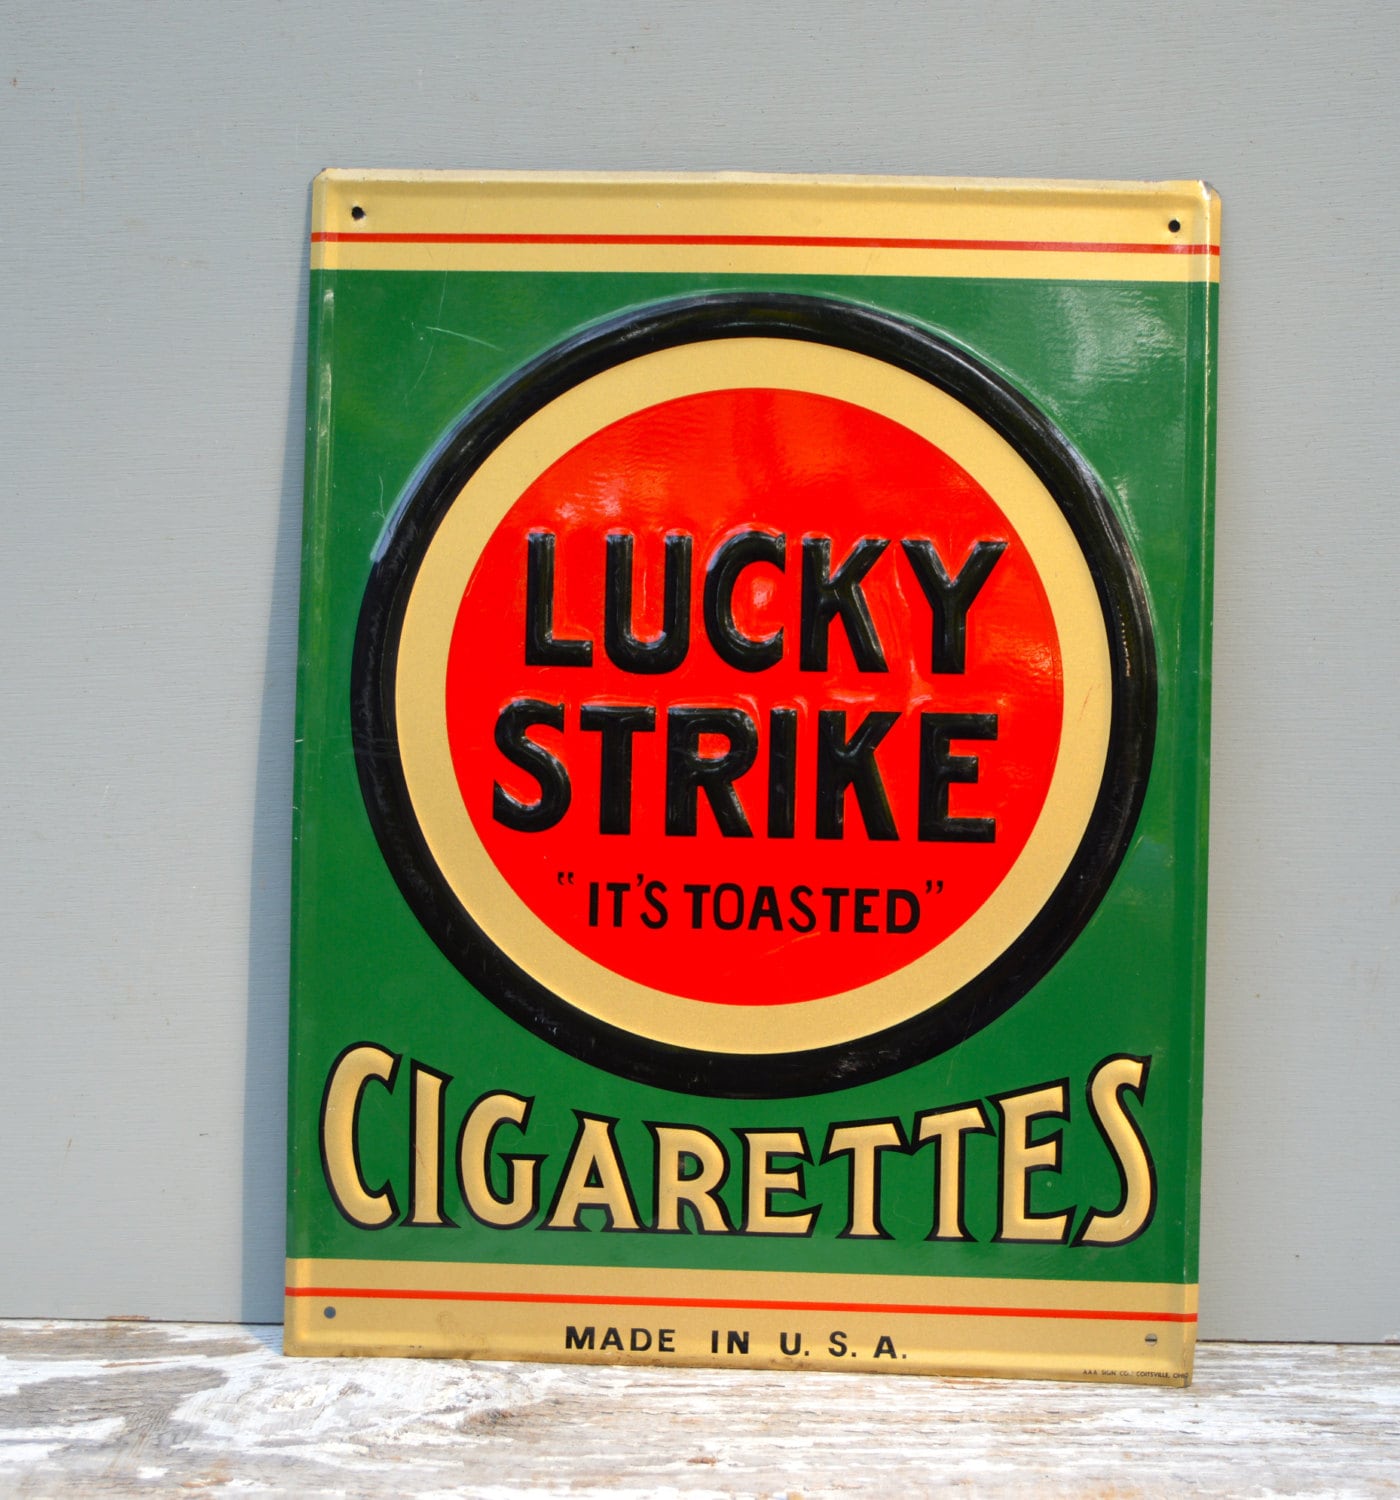 Лайки страйк компакт. Сигареты лаки страйк компакт. Лаки страйк Грин. Сигареты Lucky Strike Green. Американские сигареты лайки страйк.